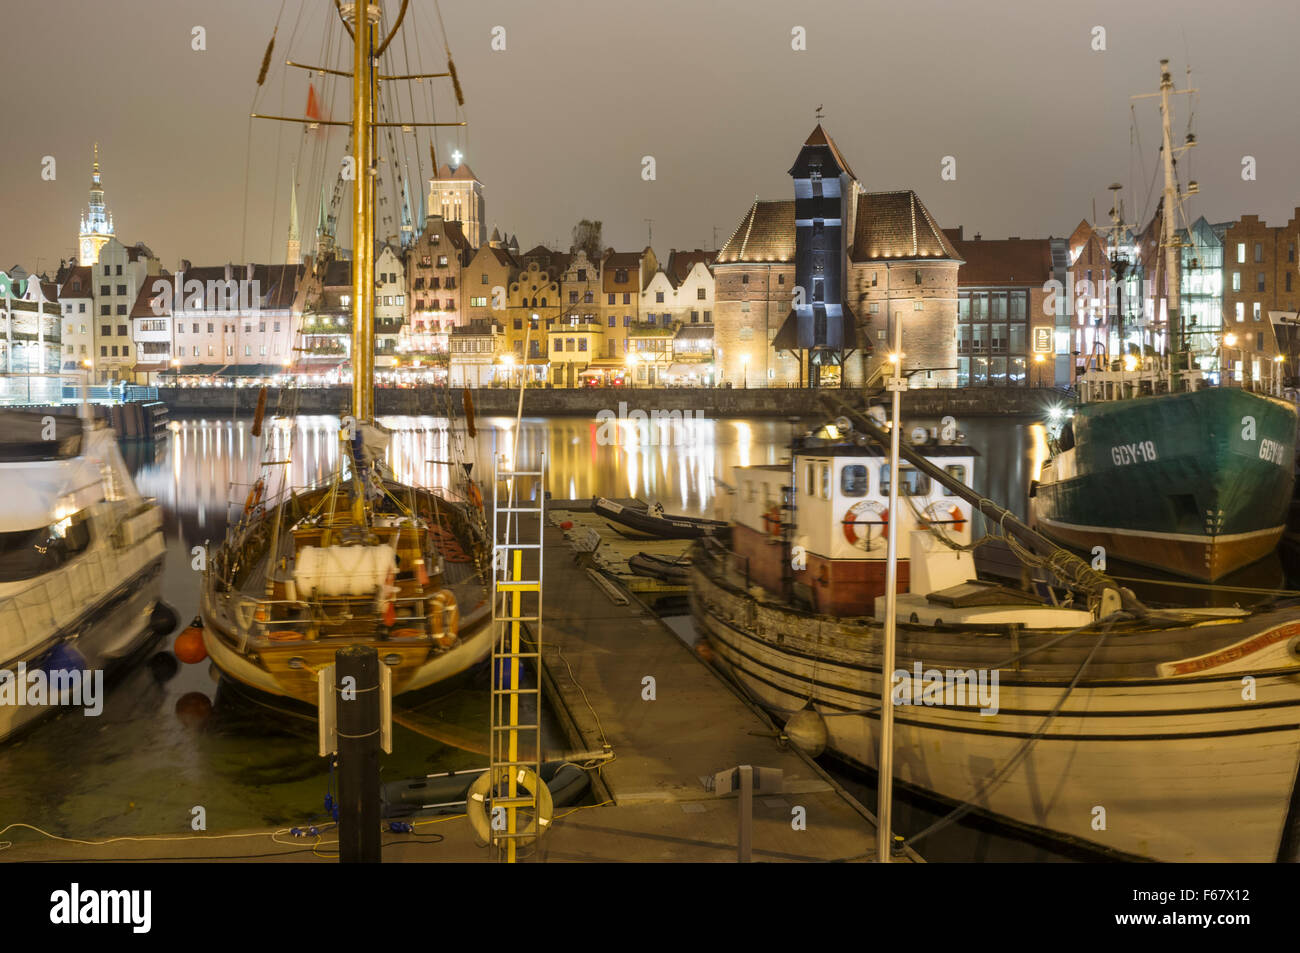 Boote, mittelalterliche Kran und Waterfront Mietskasernen spiegelt sich auf der Mottlau durch Nacht verankert. Danzig, Polen Stockfoto